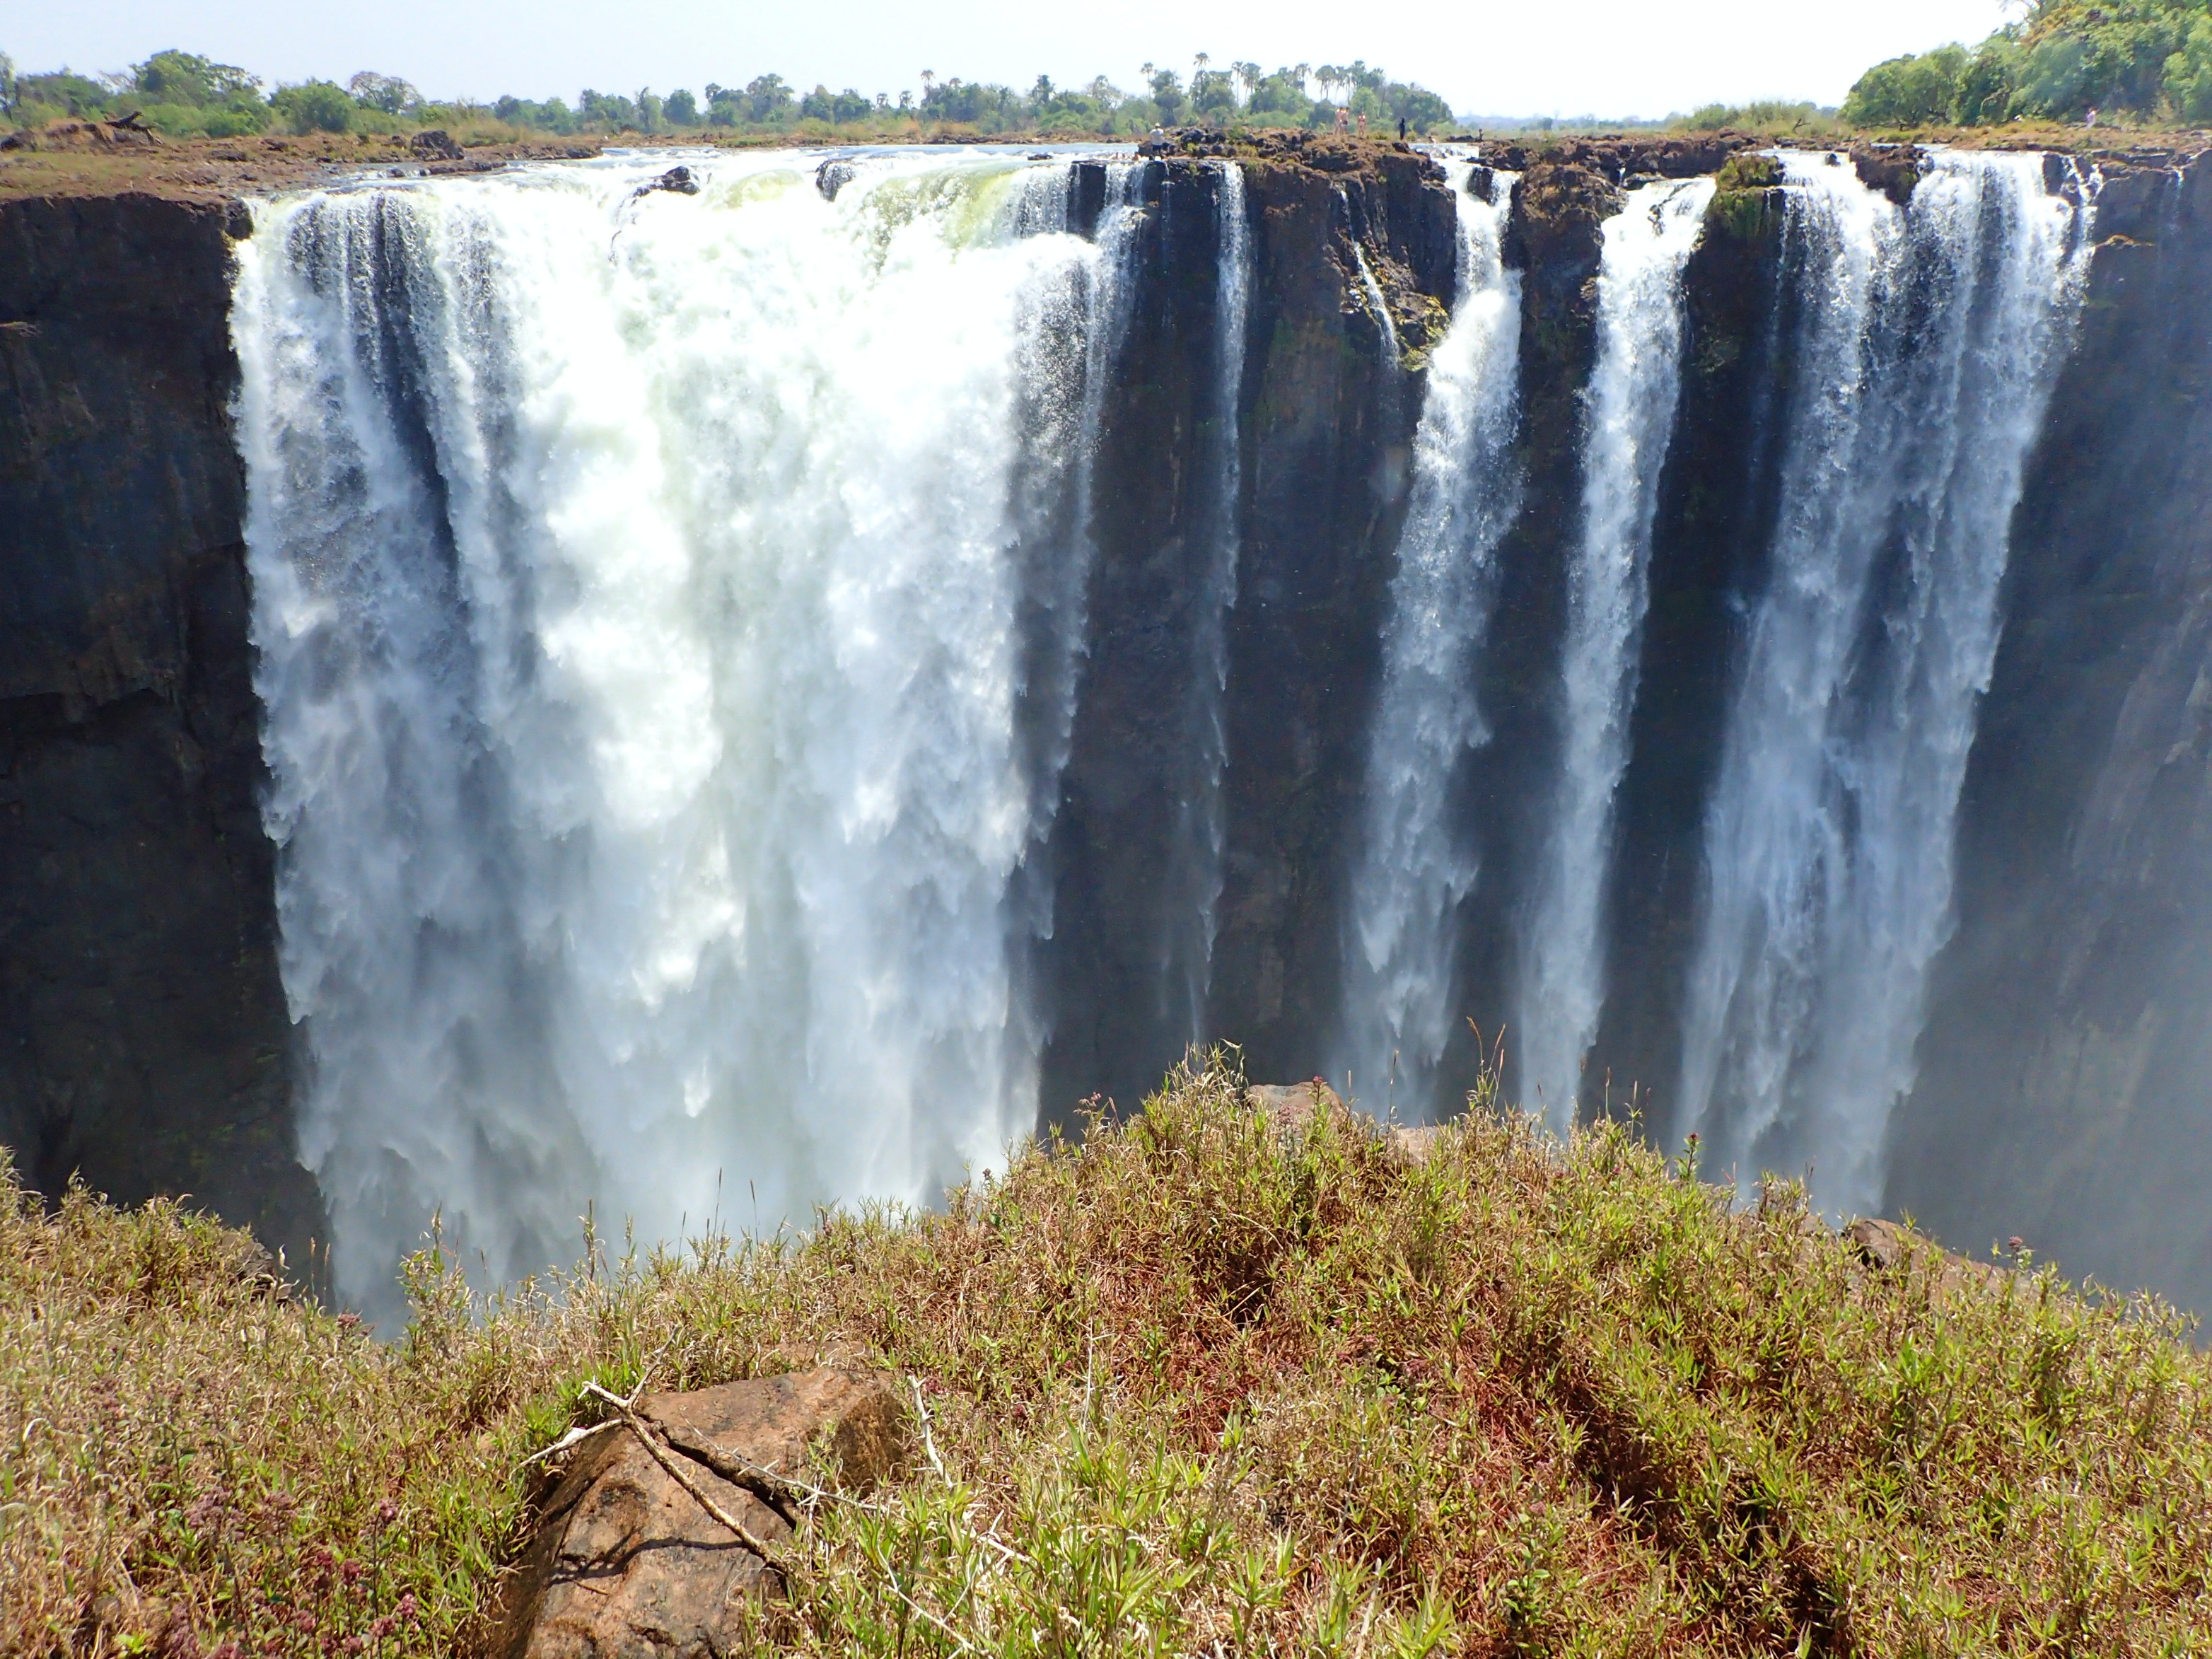 Visiting Victoria Falls-Zimbabwe Side